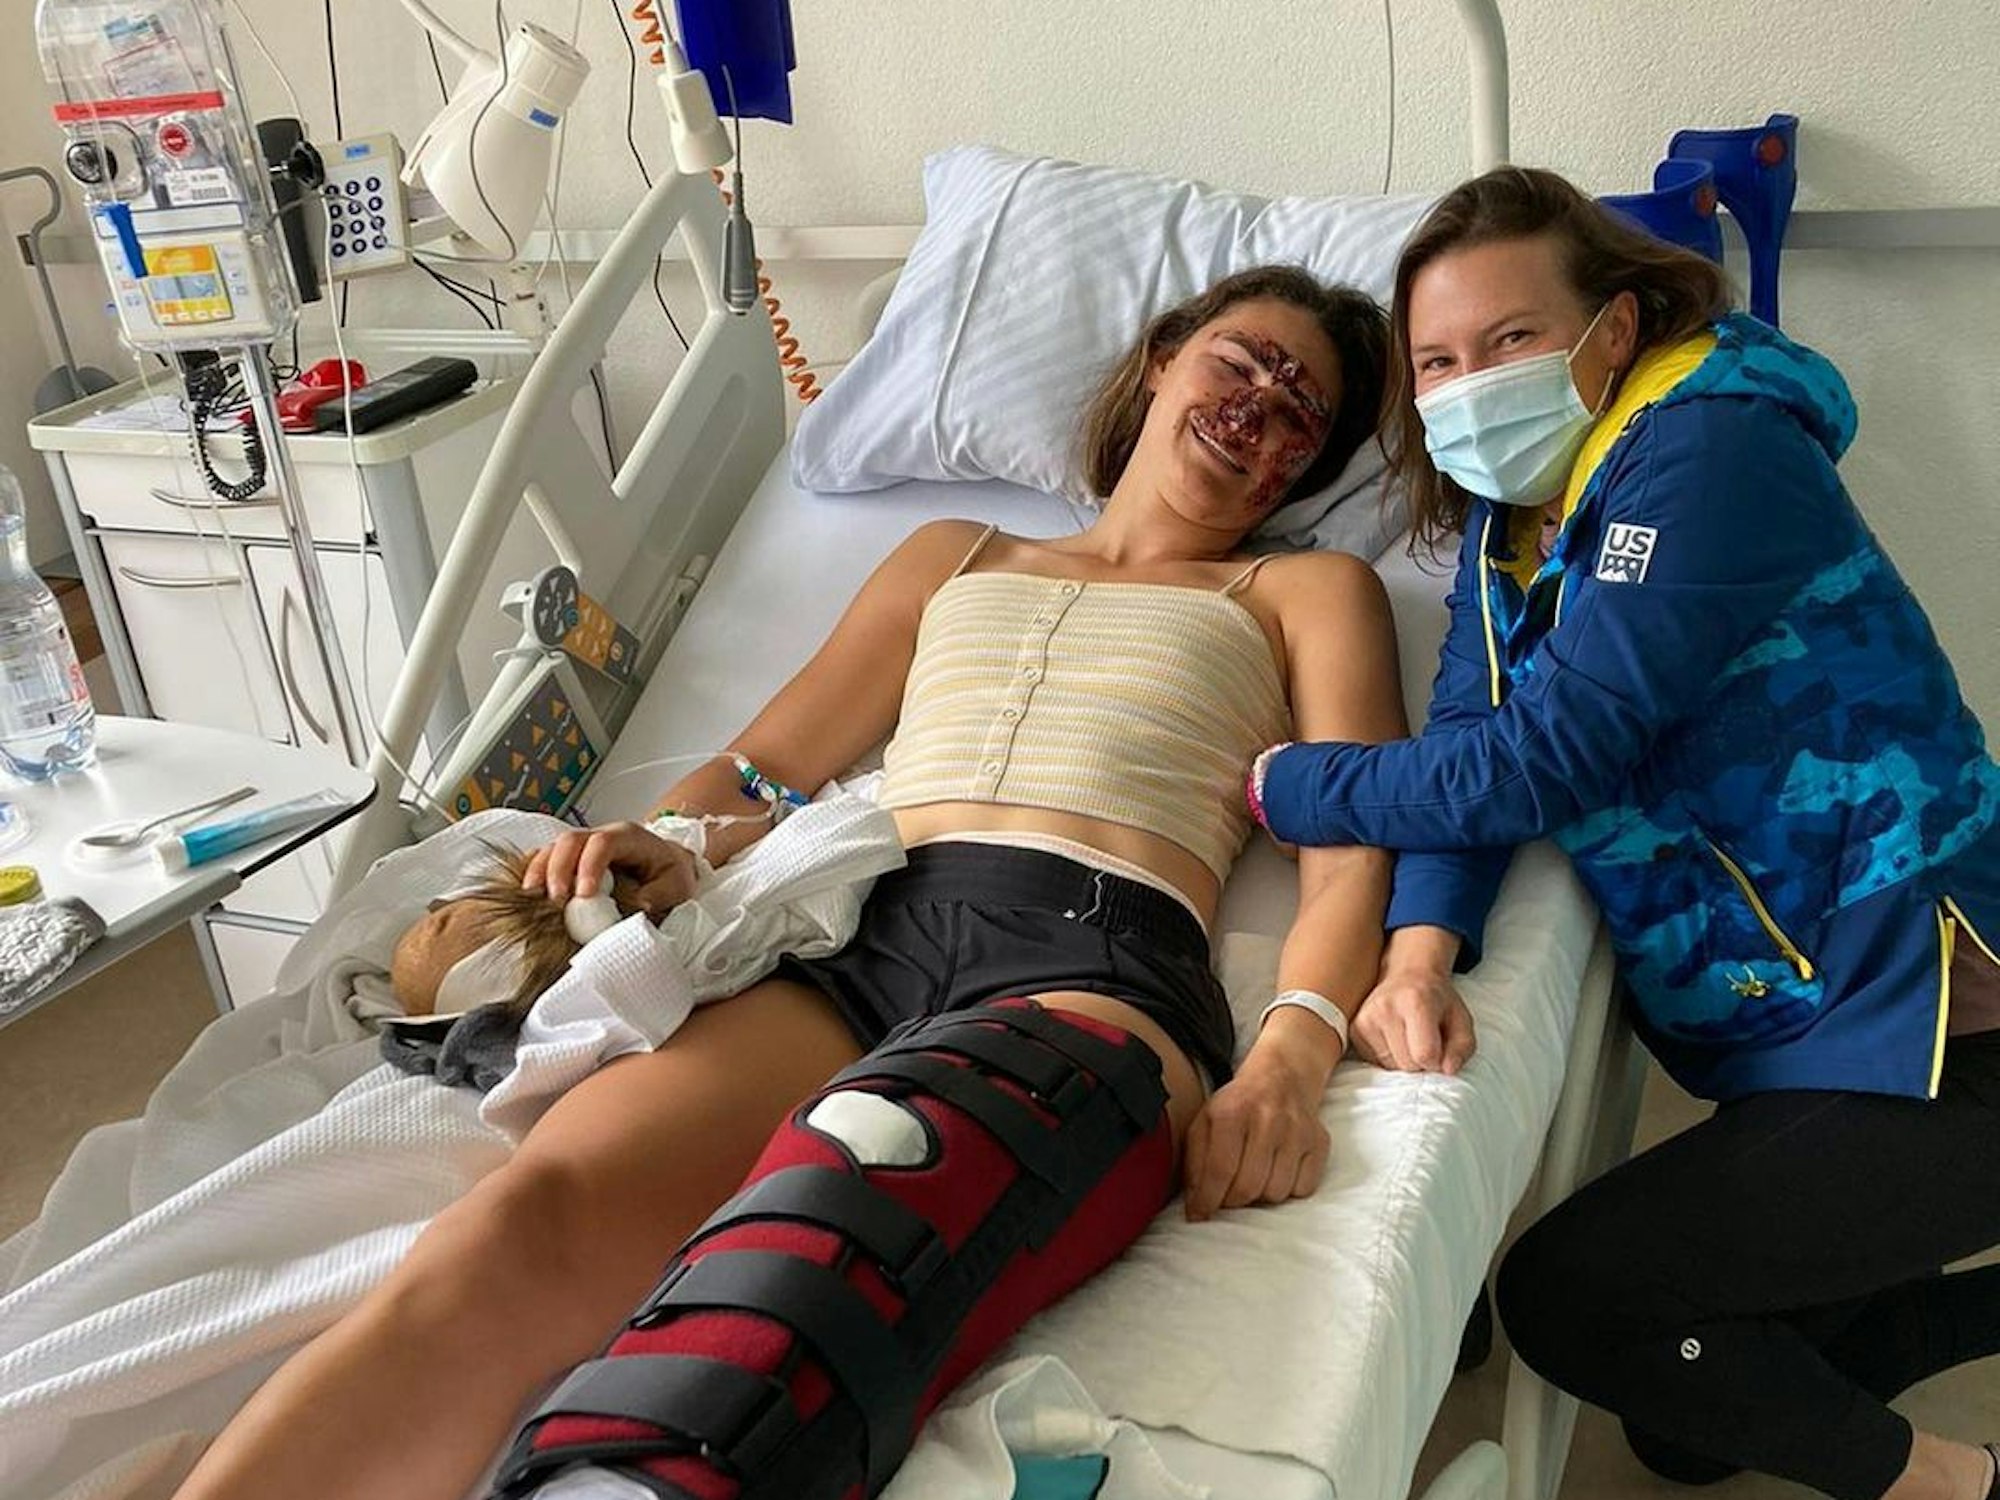 Teamkollegin Torey Anderson (r.) besuchte den verletzten Ski-Star Alice Merryweather im Schweizer Krankenhaus.